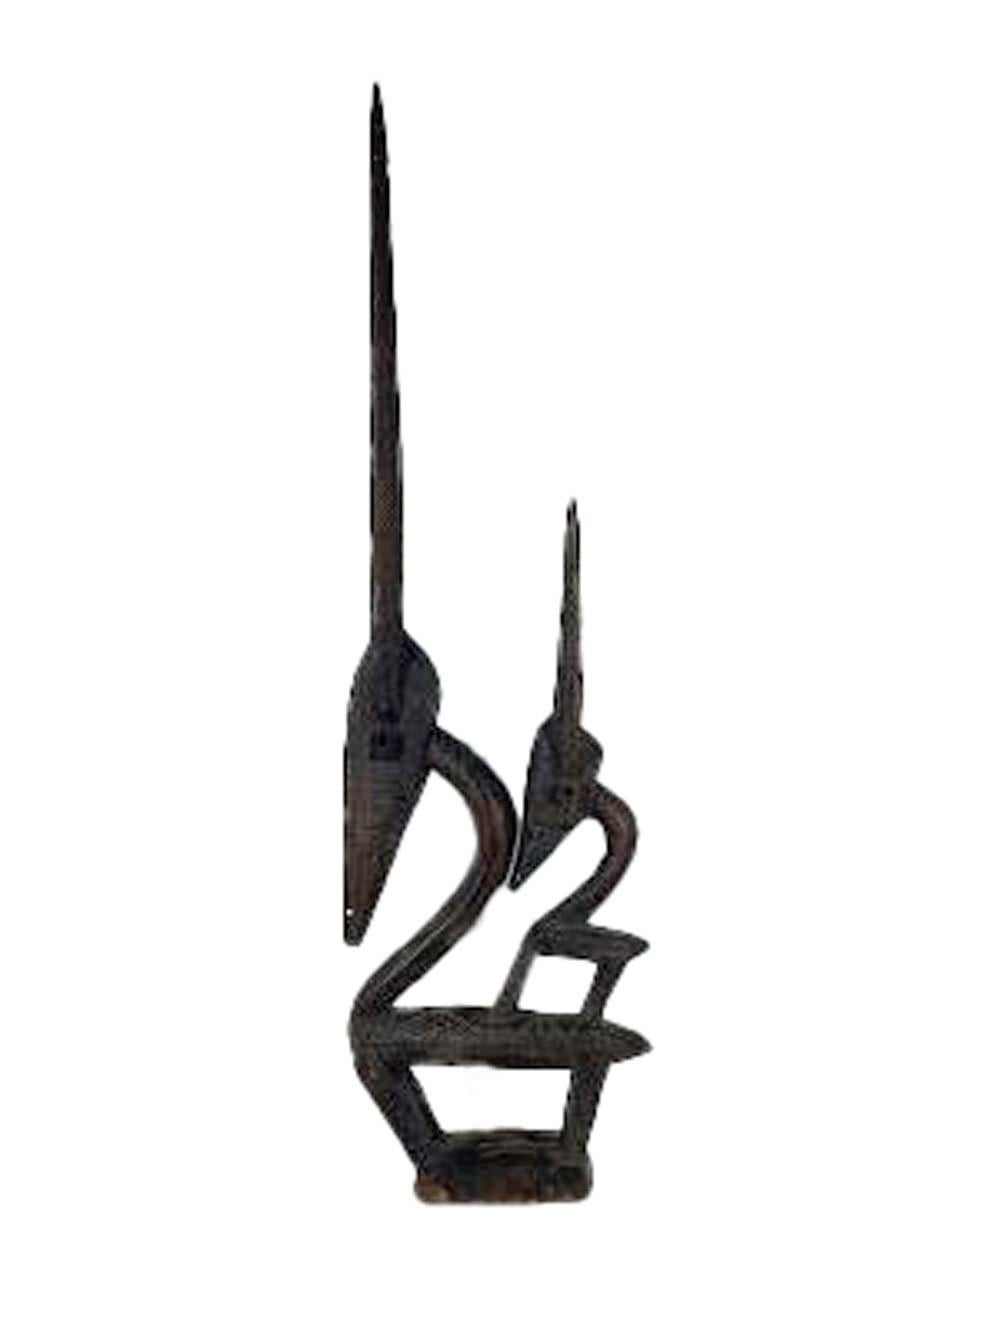 Chi wara ist ein ritueller Kopfschmuck, der vom Volk der Bambara in Mali getragen wird. Die als männliche oder weibliche Figuren dargestellte Chi-Ware wird mit der Landwirtschaft in Verbindung gebracht. Dieses weibliche Exemplar ist eine starke und